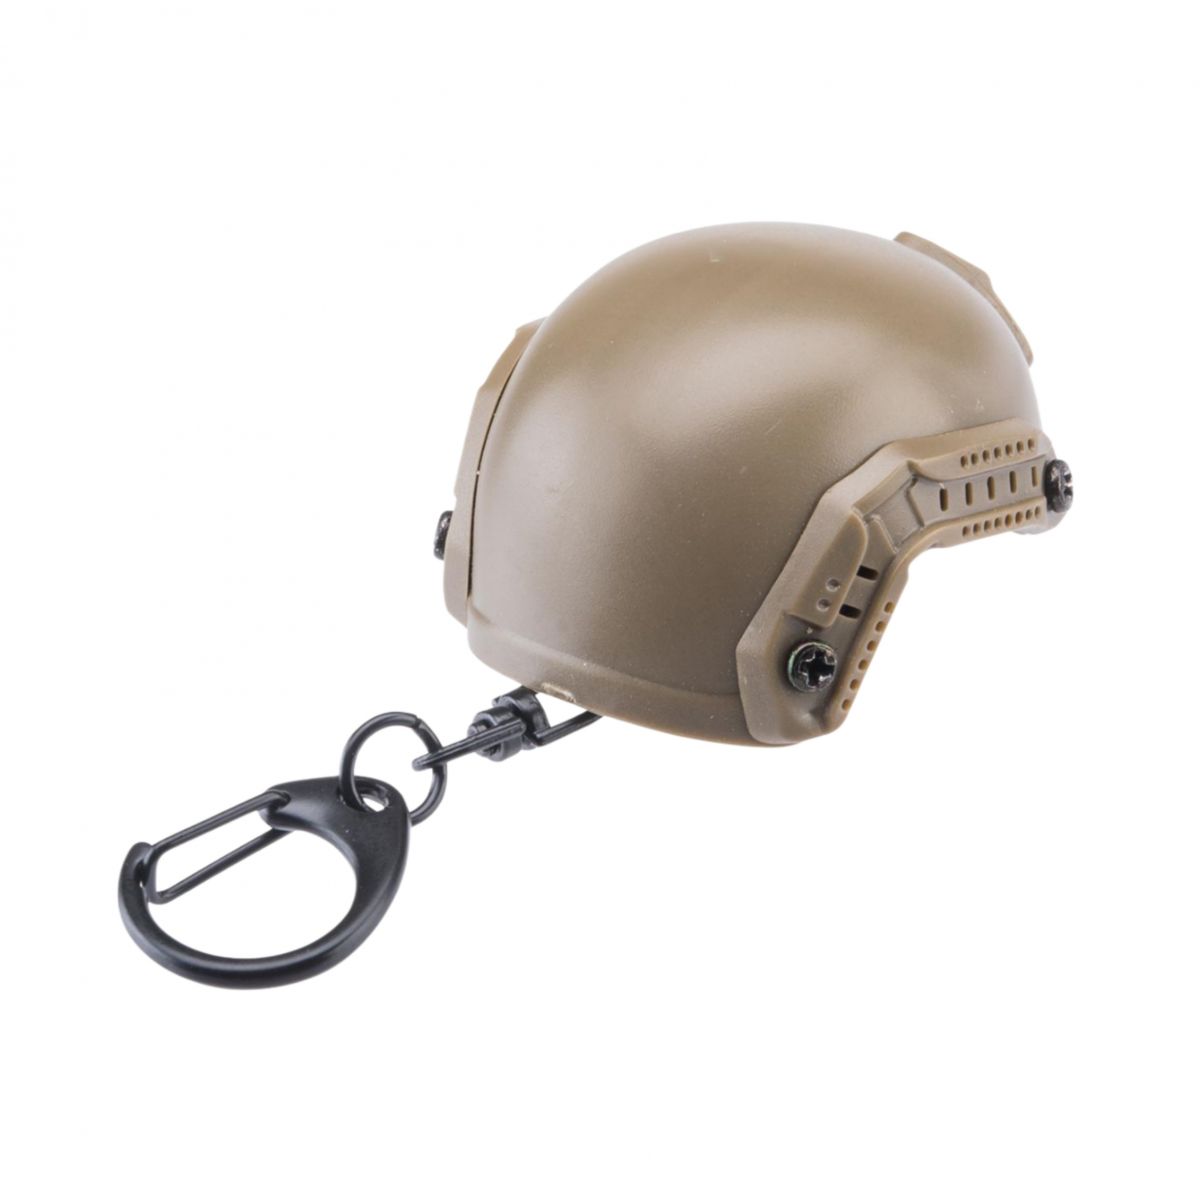 Брелок-открывалка в виде шлема TOR-D. Функциональный сувенир с карабином 4